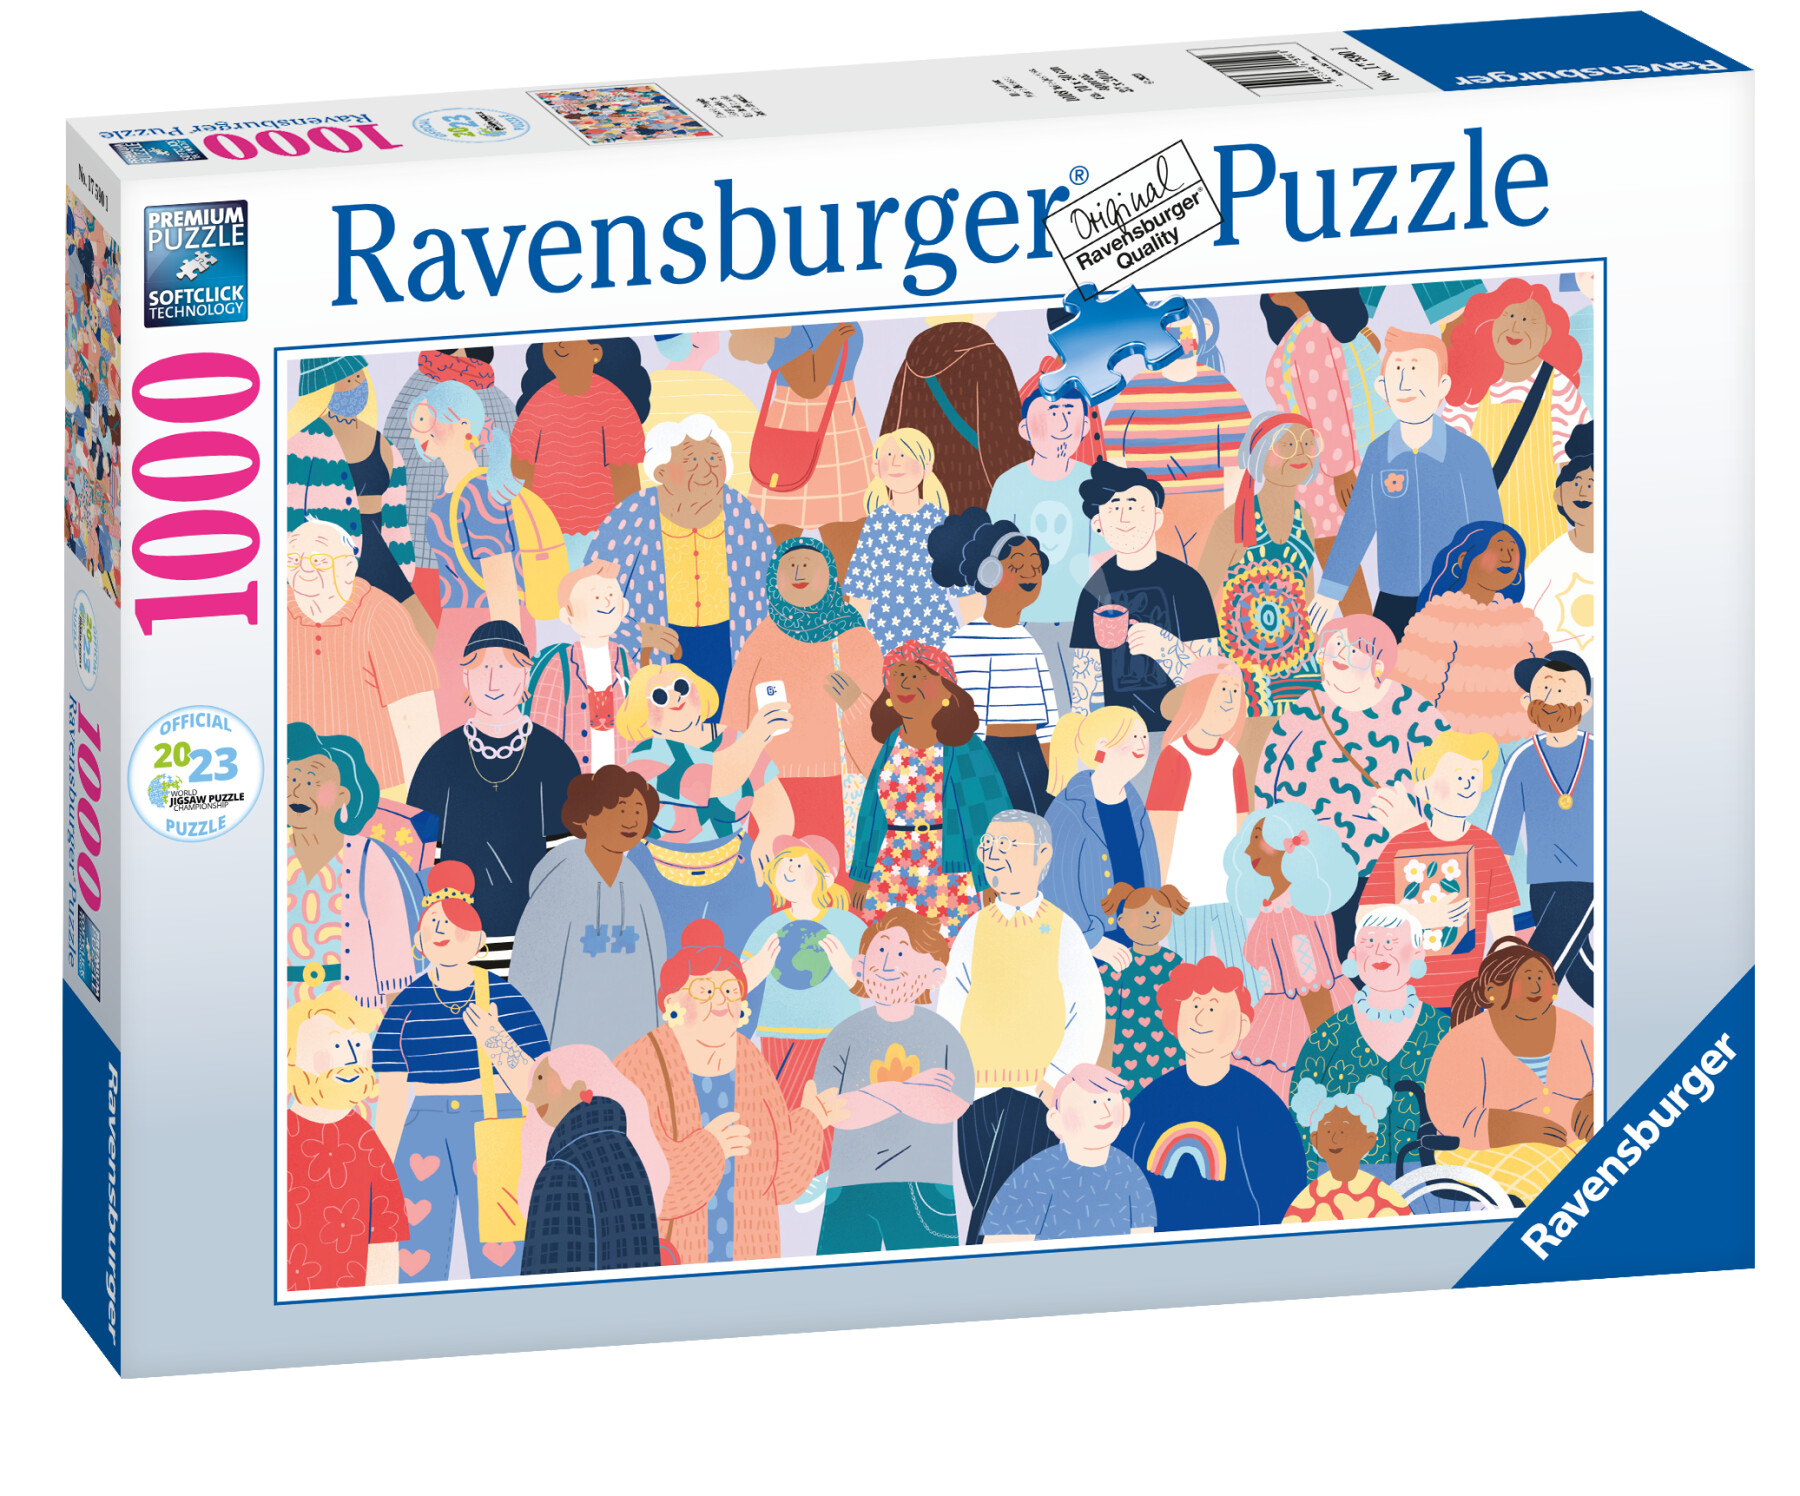 Ravensburger - puzzle puzzle people wjpc, 1000 pezzi, puzzle adulti - RAVENSBURGER